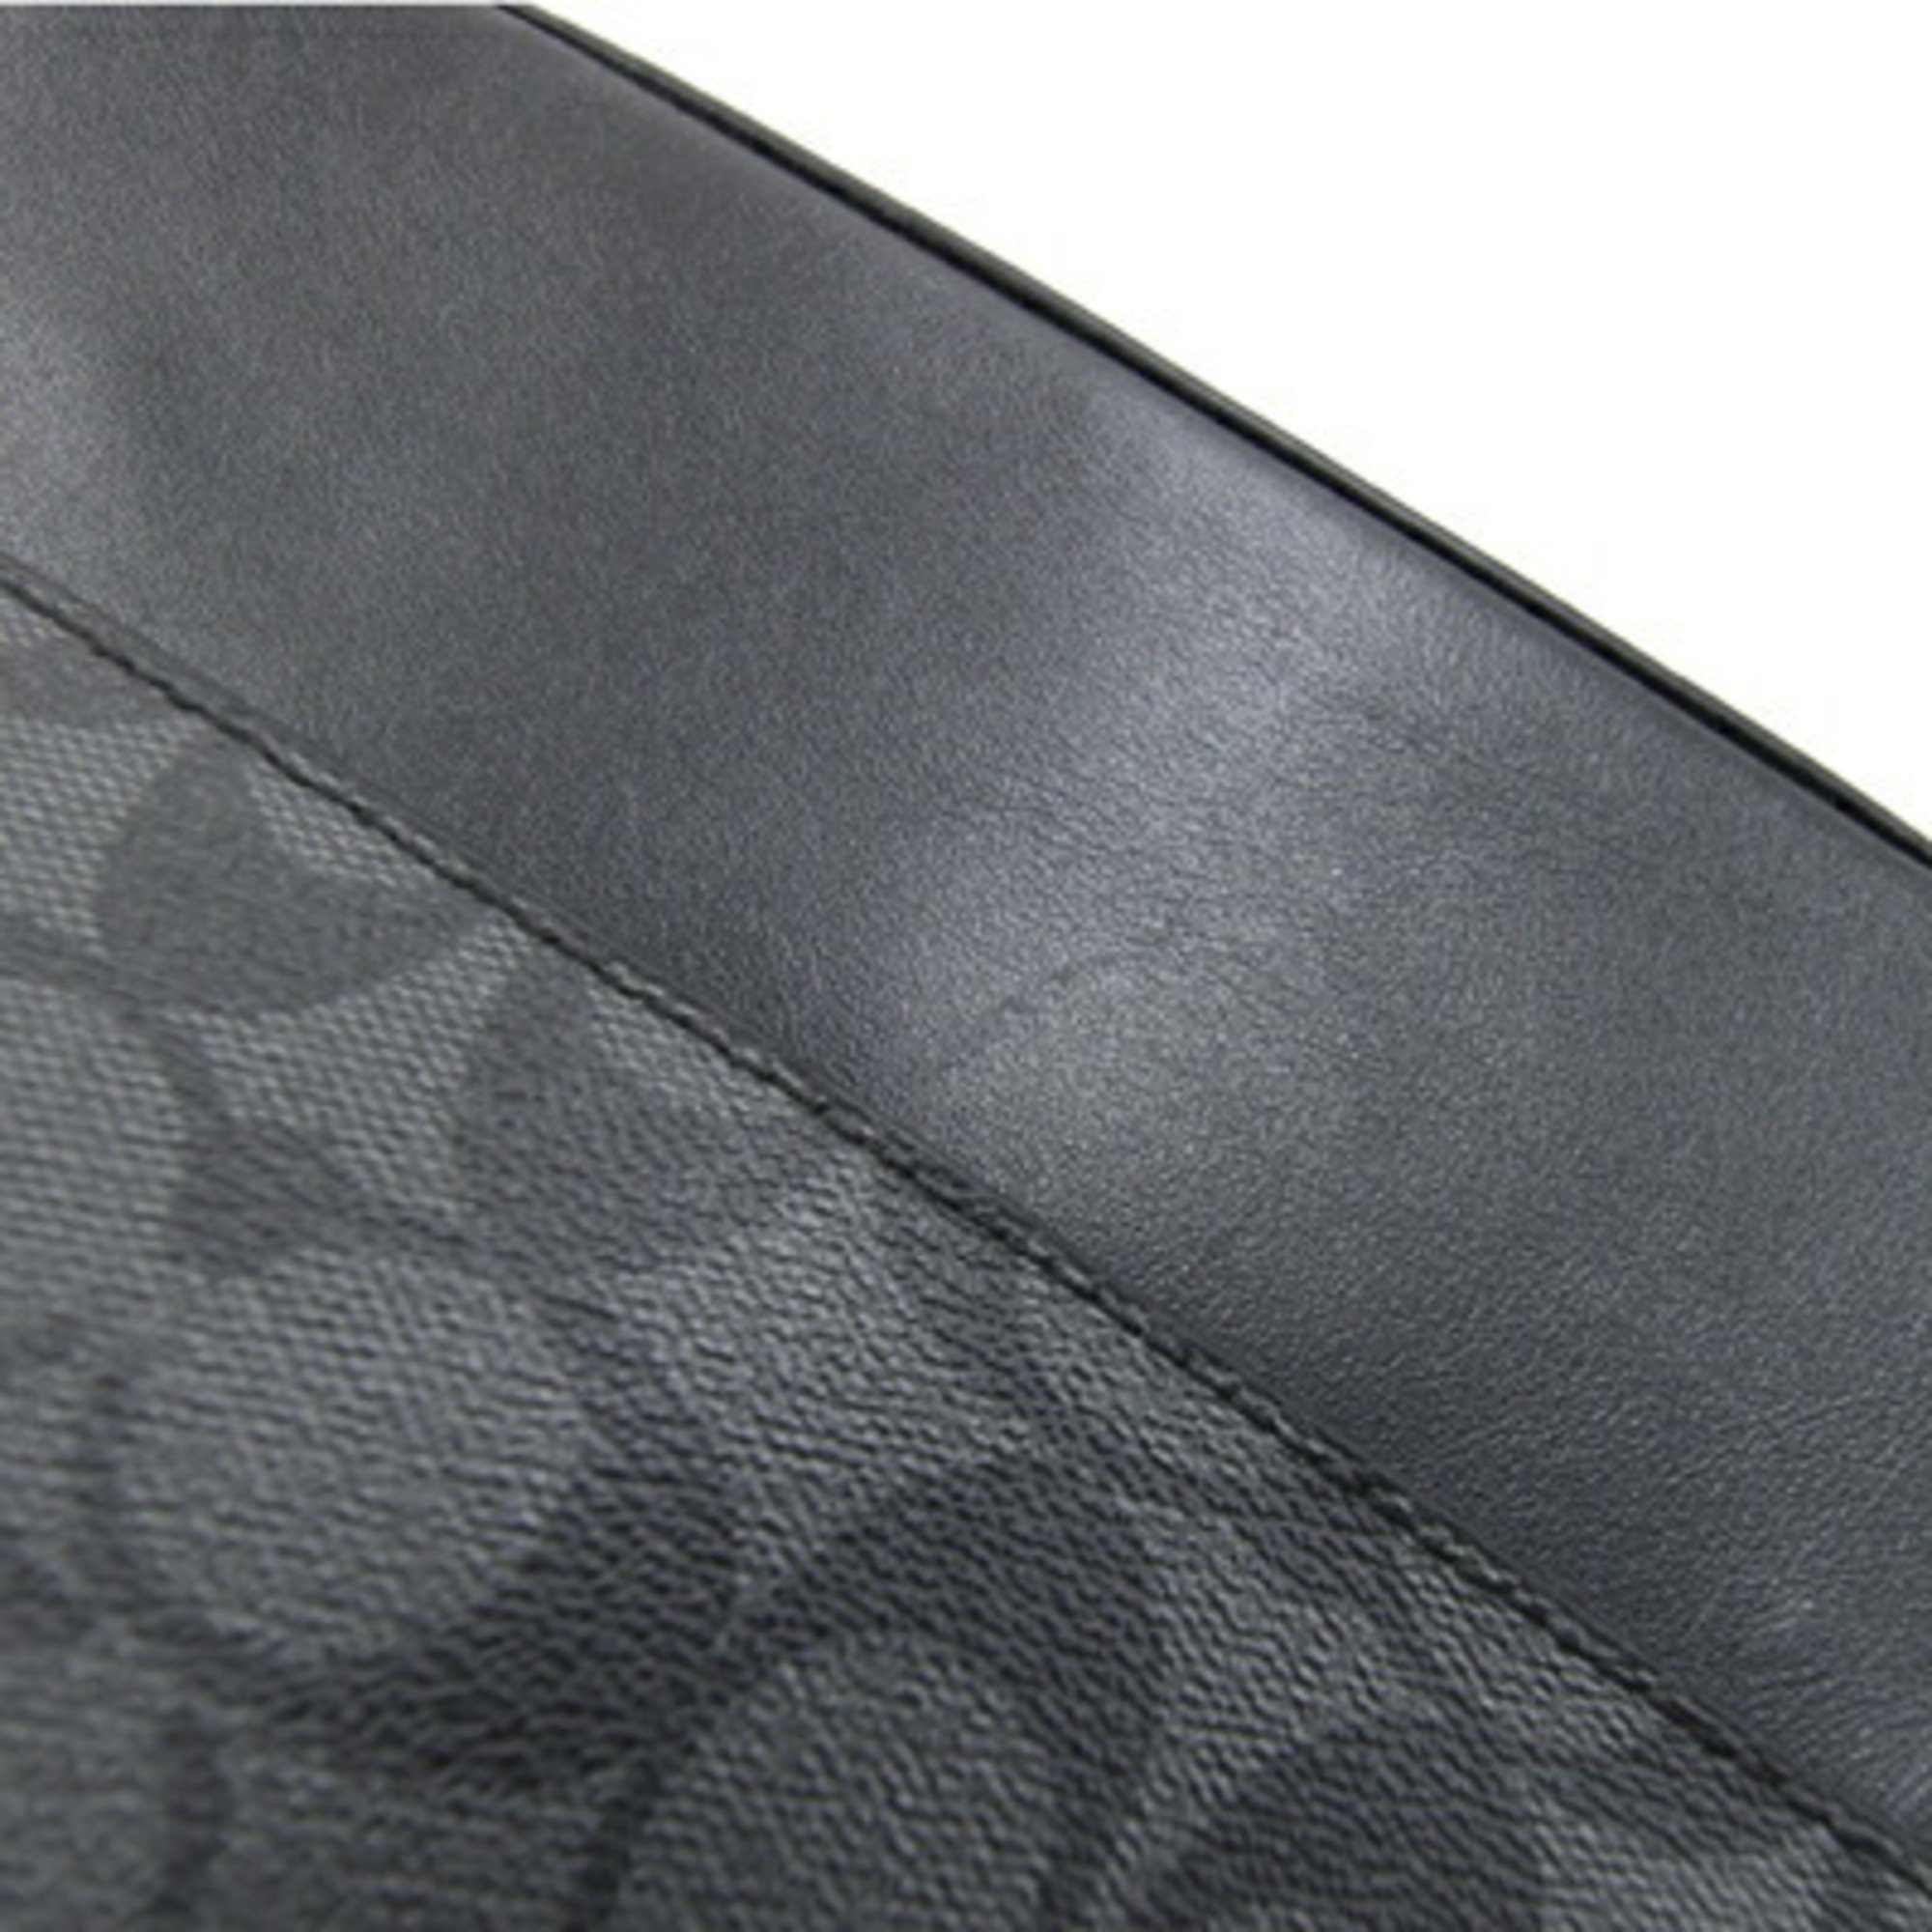 Coach Shoulder Bag Signature 4010 Charcoal Black PVC Leather Men's COACH